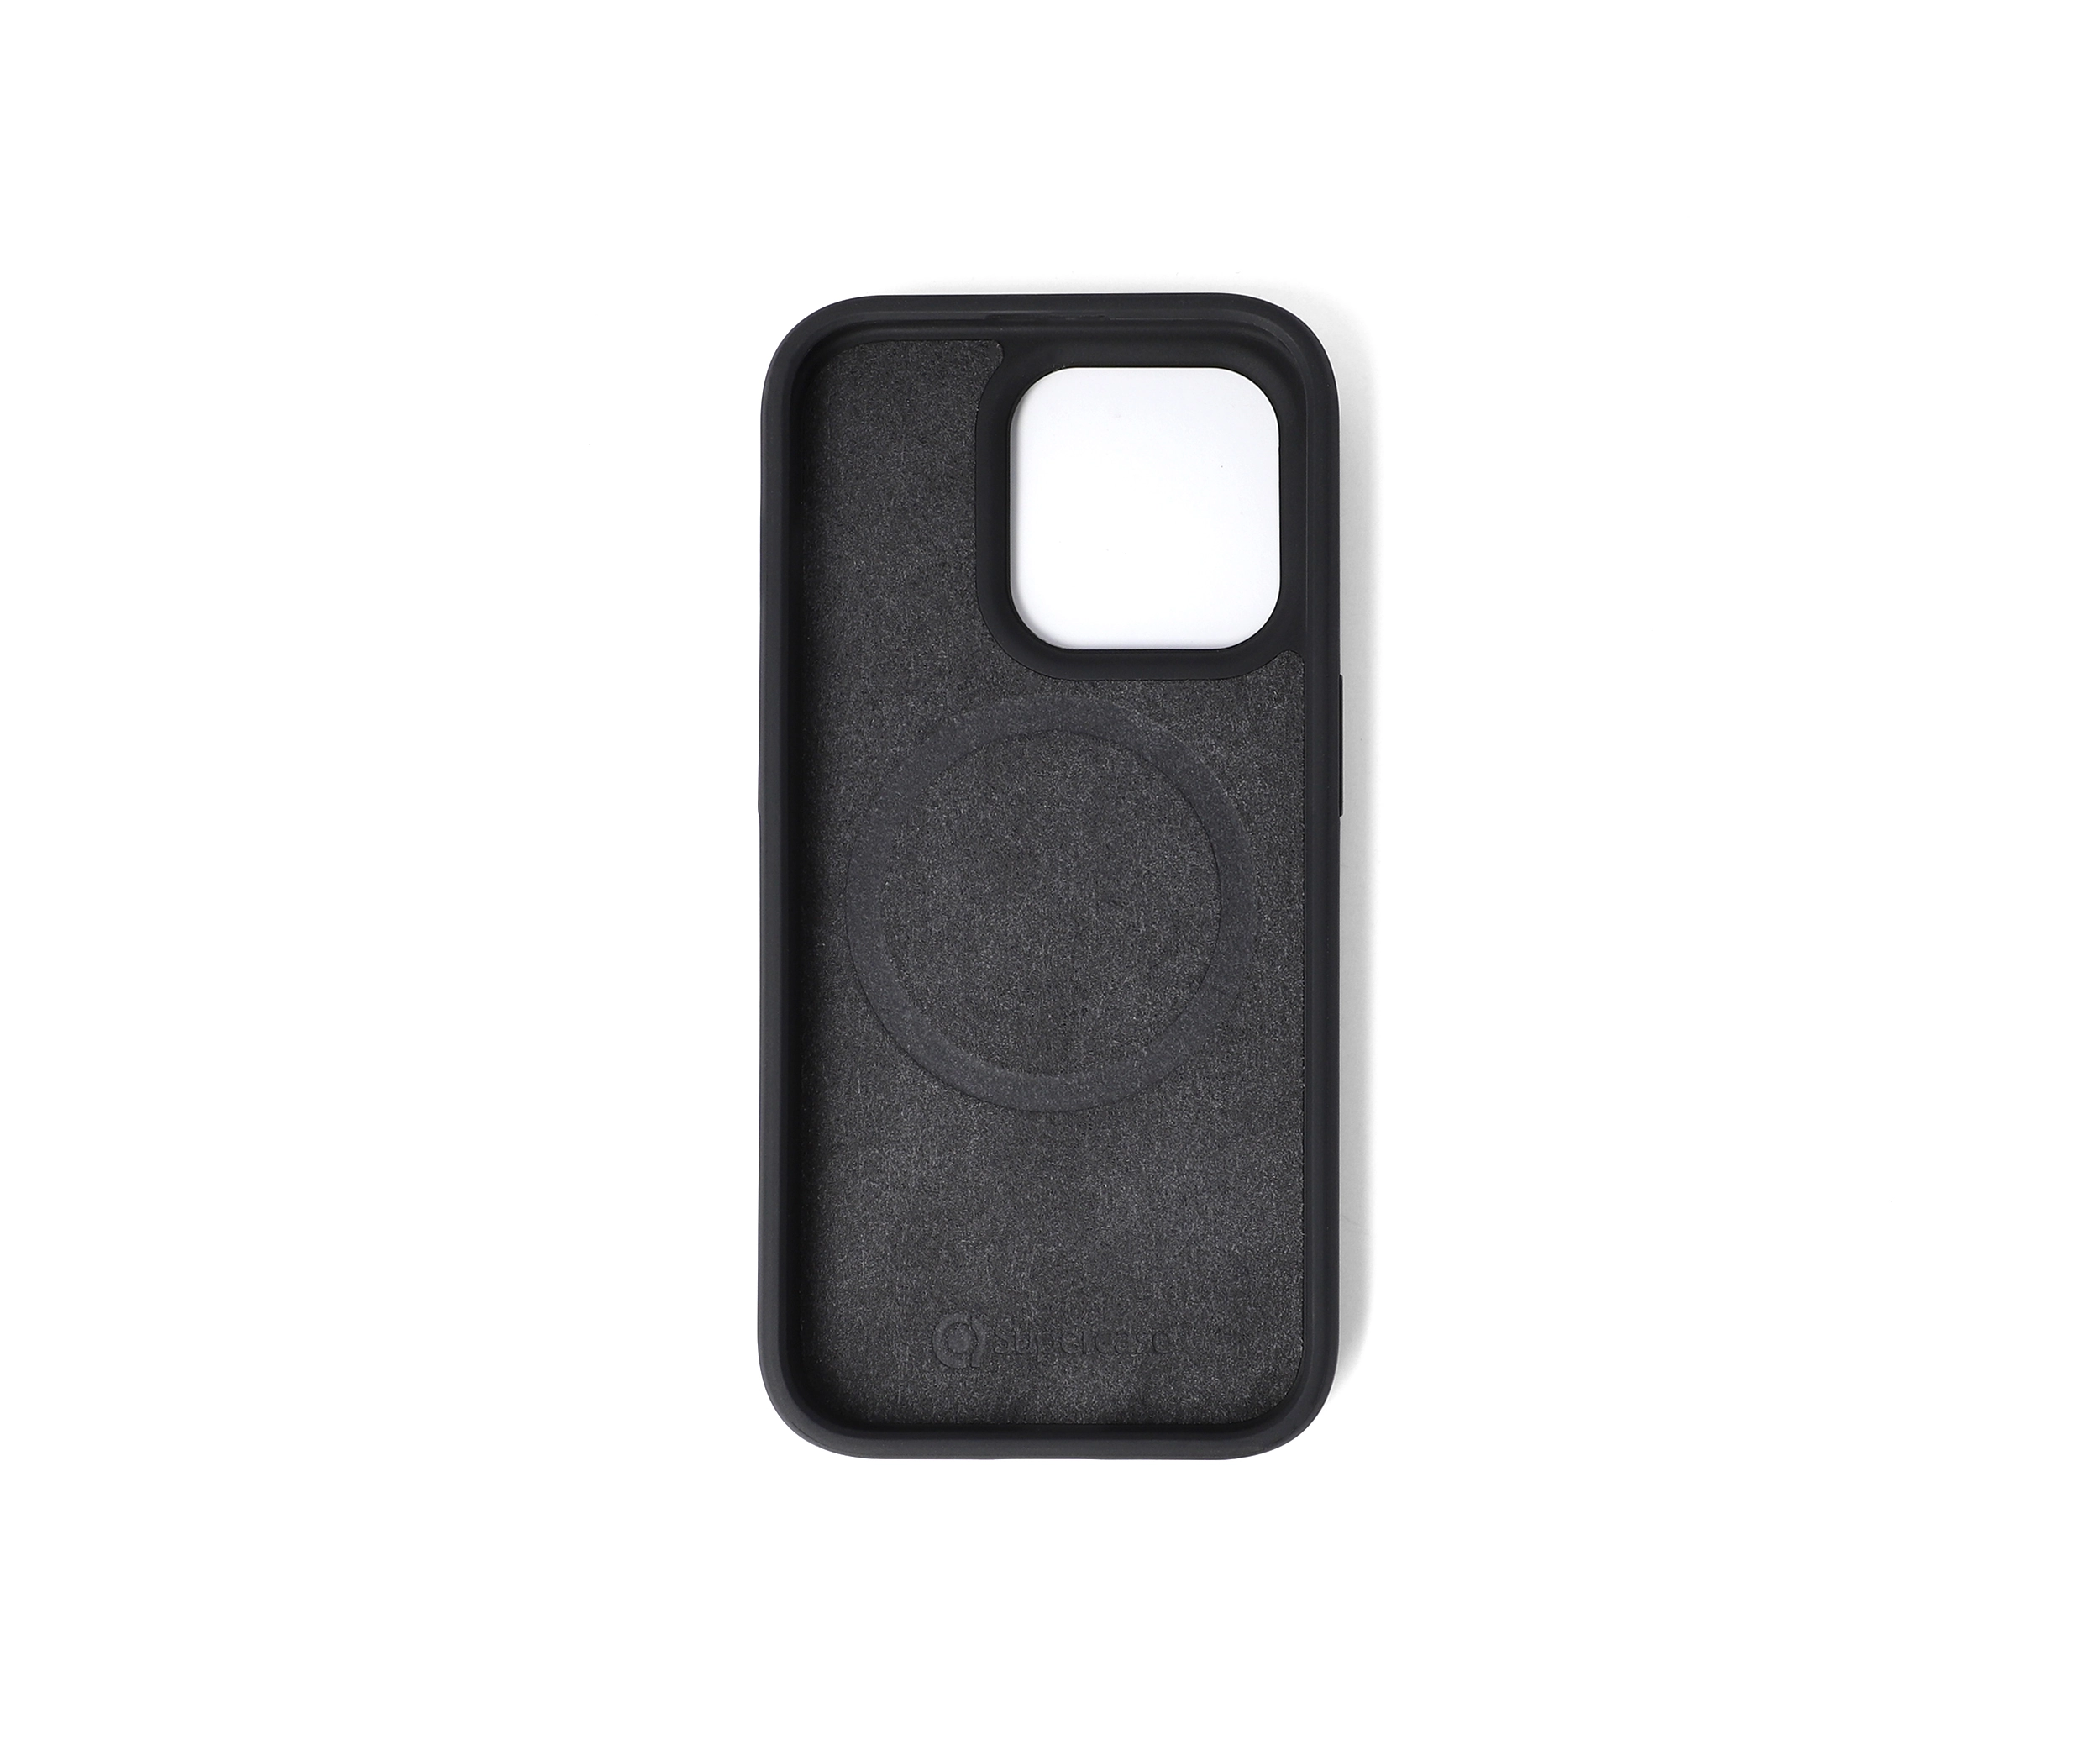 slim design iphone case stockist